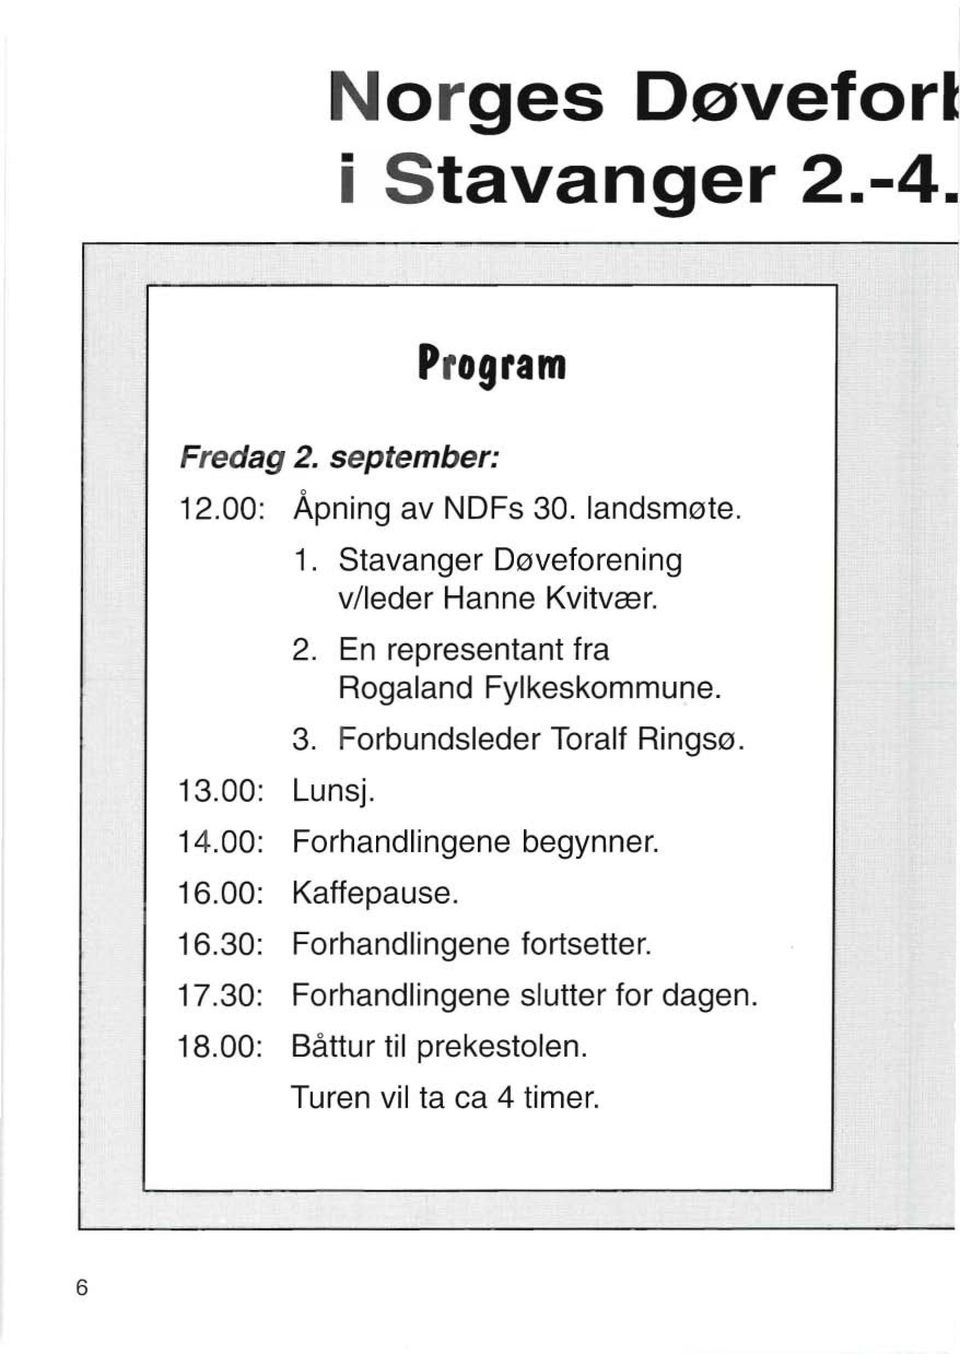 3. Forbundsleder Toralf Ringsø. 14.00: Forhandlingene begynner. 16.00: Kaffepause. 16.30: Forhandlingene fortsetter.